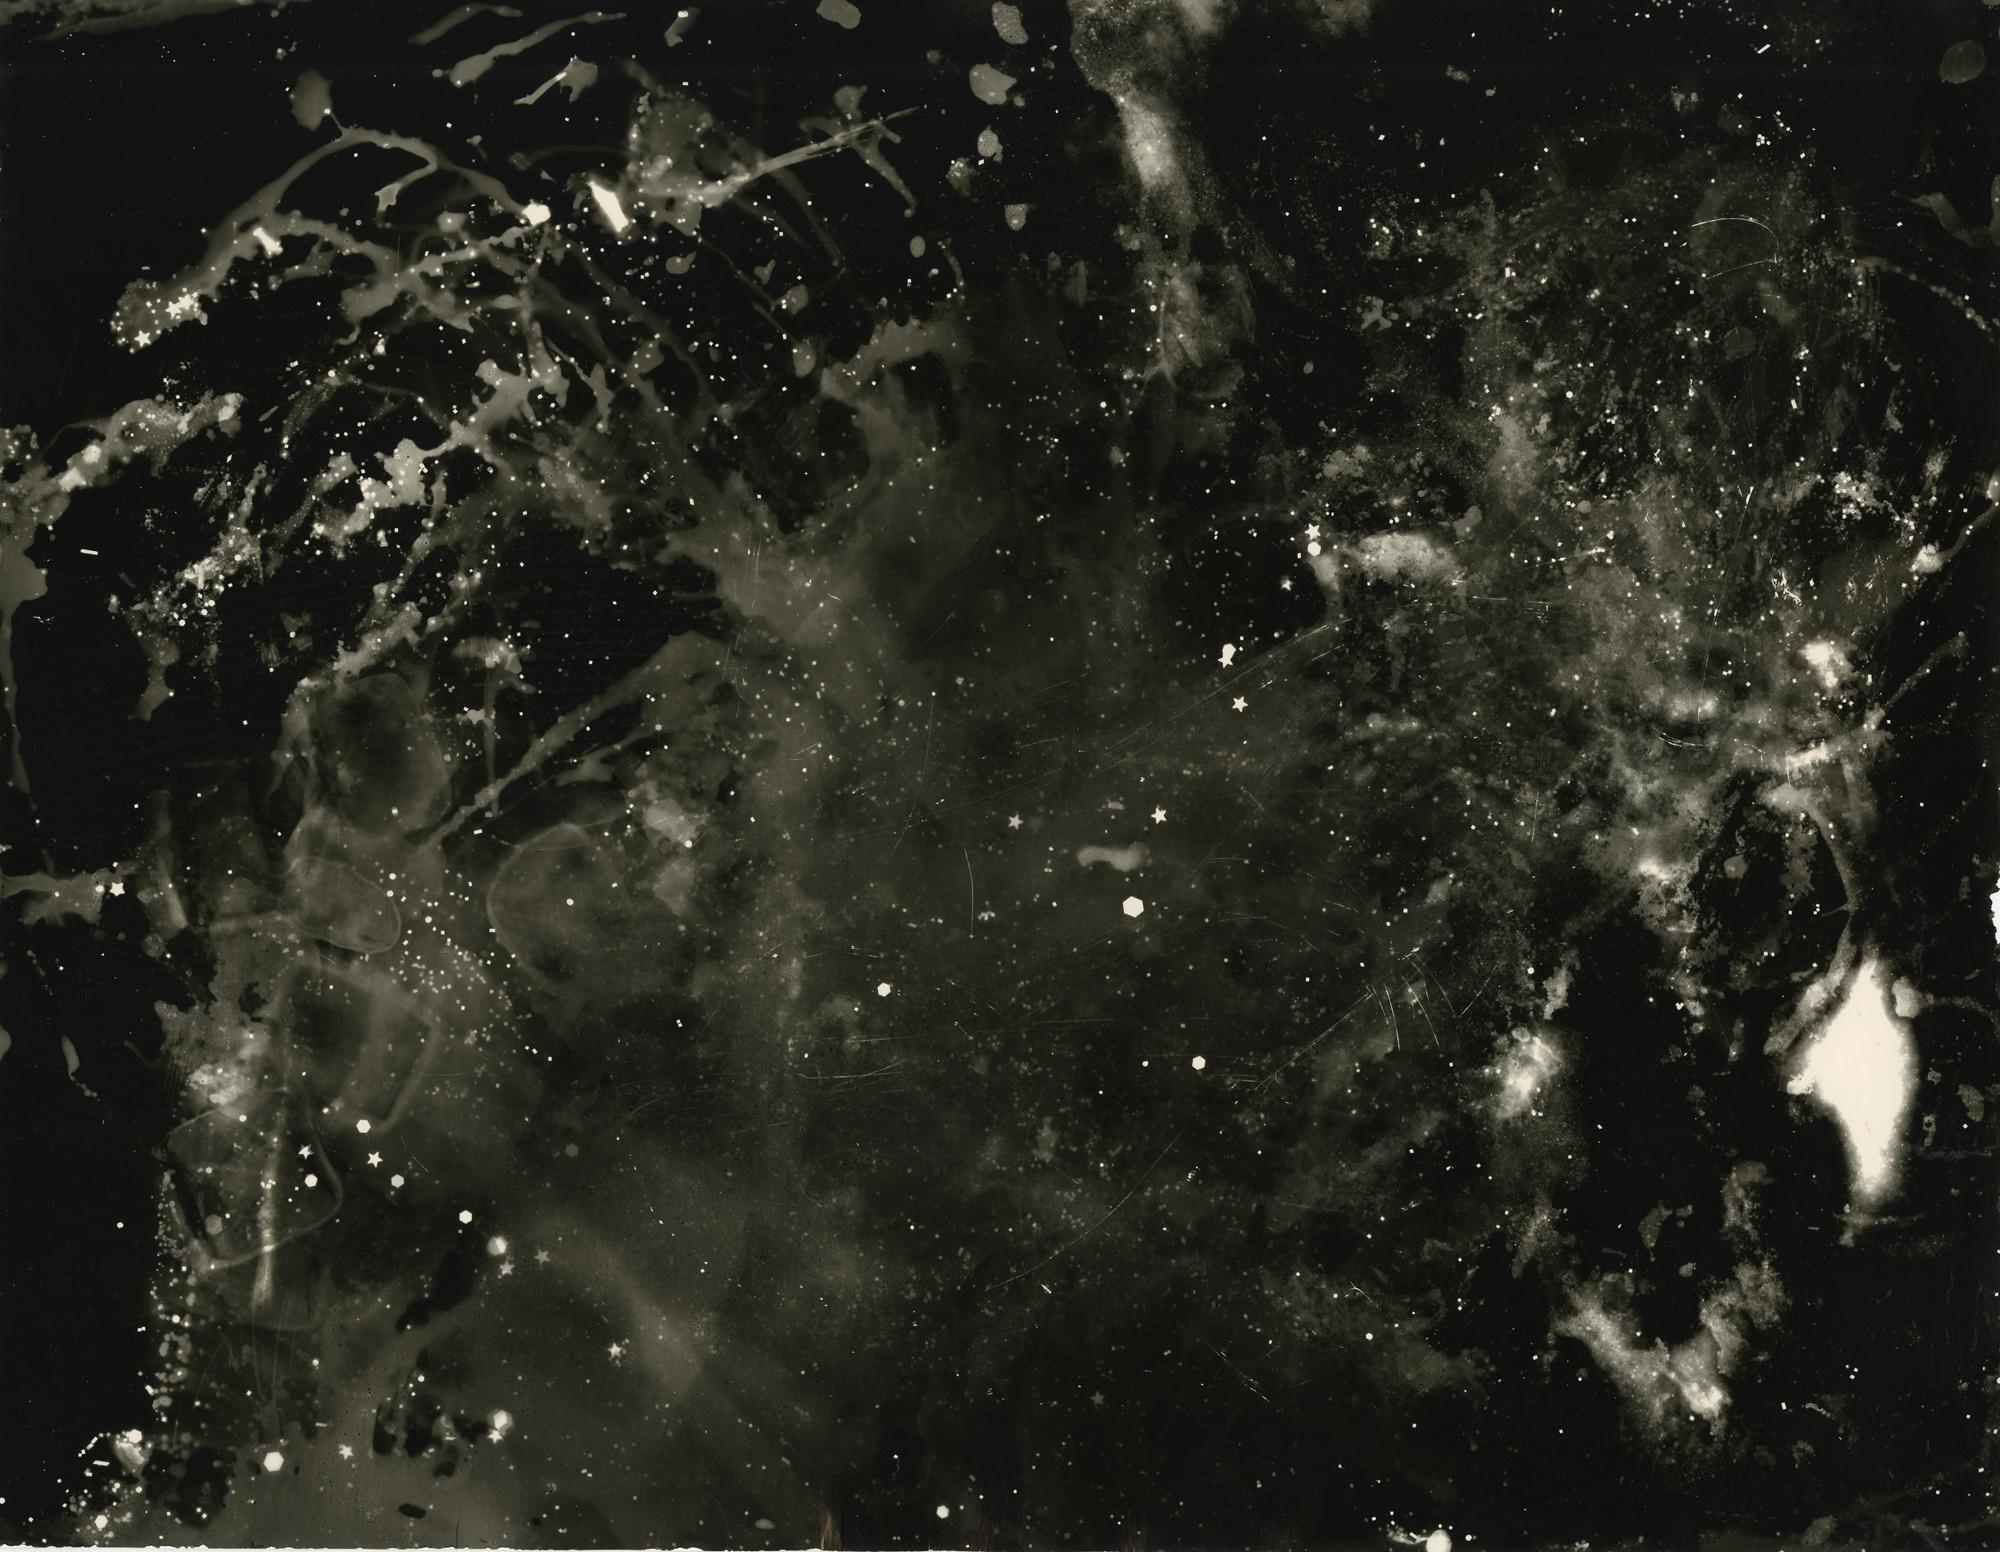 Kimberly Schneider Photography Abstract Photograph – Starry Night - abstraktes, einzigartiges, zeitgenössisches Fotogramm aus Silbergelatinesatin im Altprozess